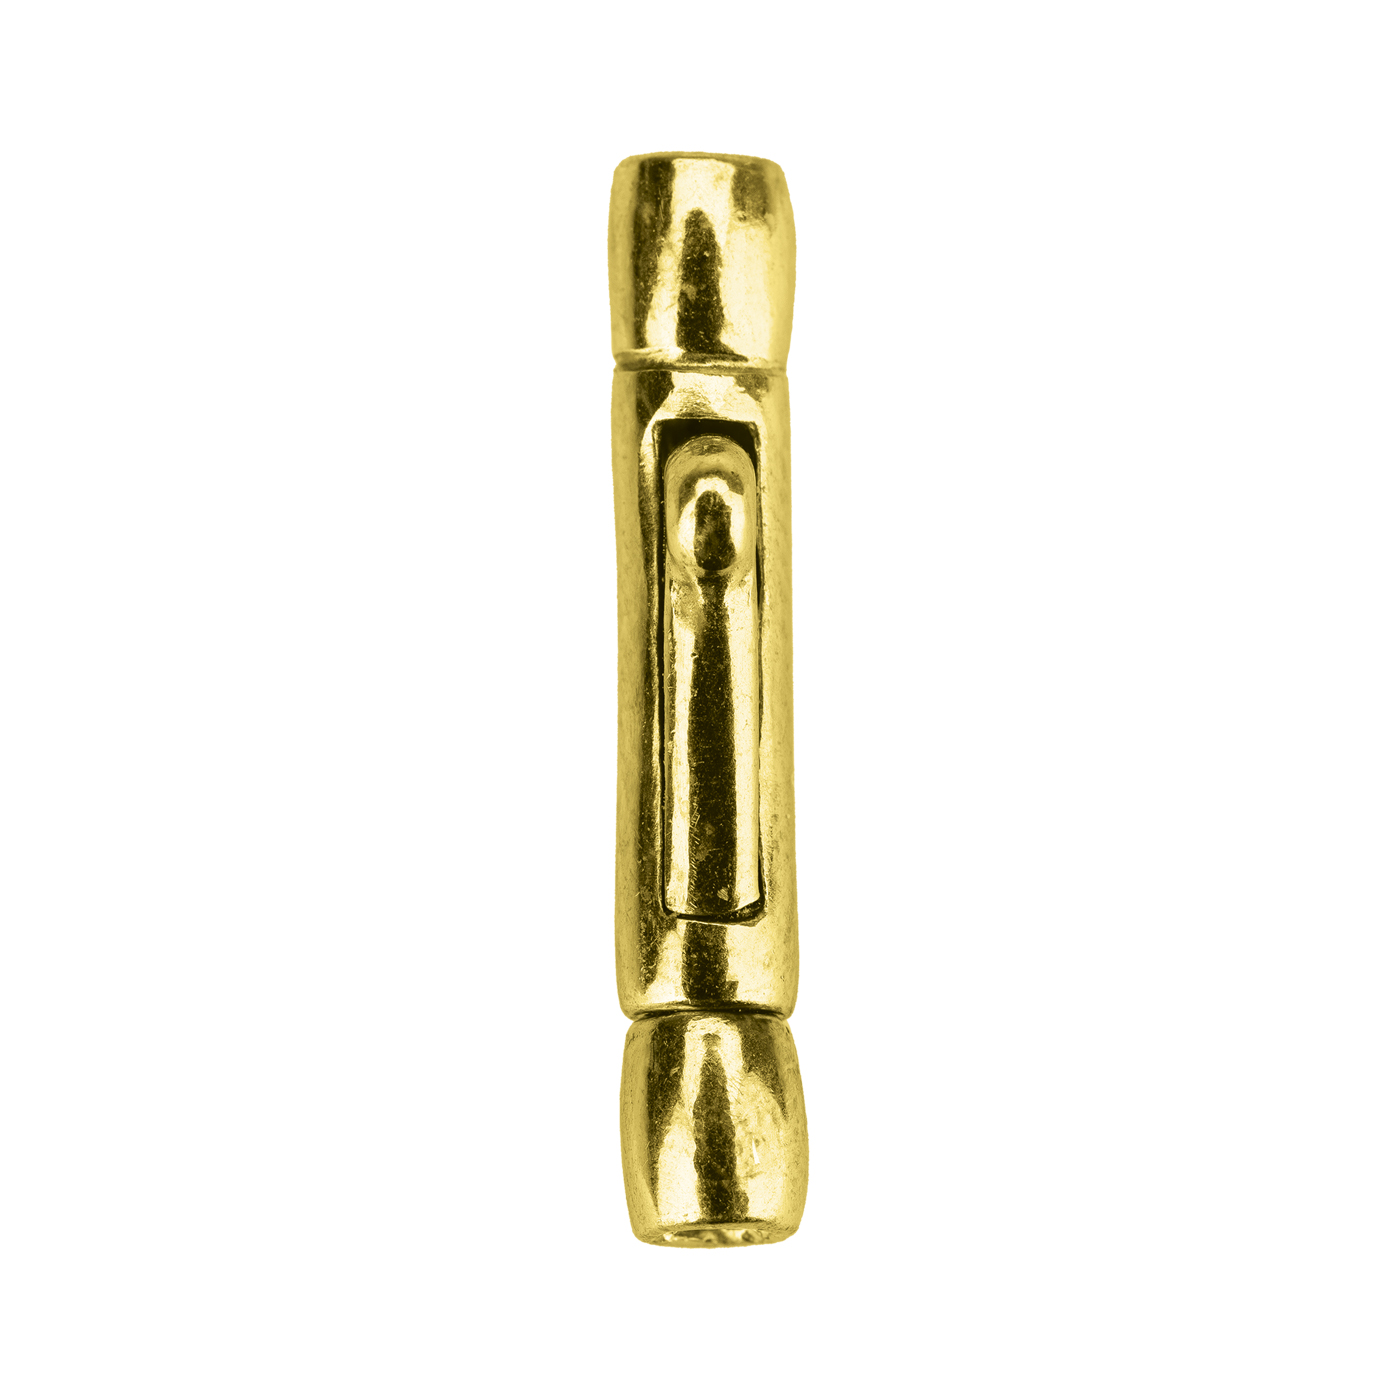 Krokodilverschluss, 925 Ag vergoldet, Innen-ø 1,6 mm - 1 Stück